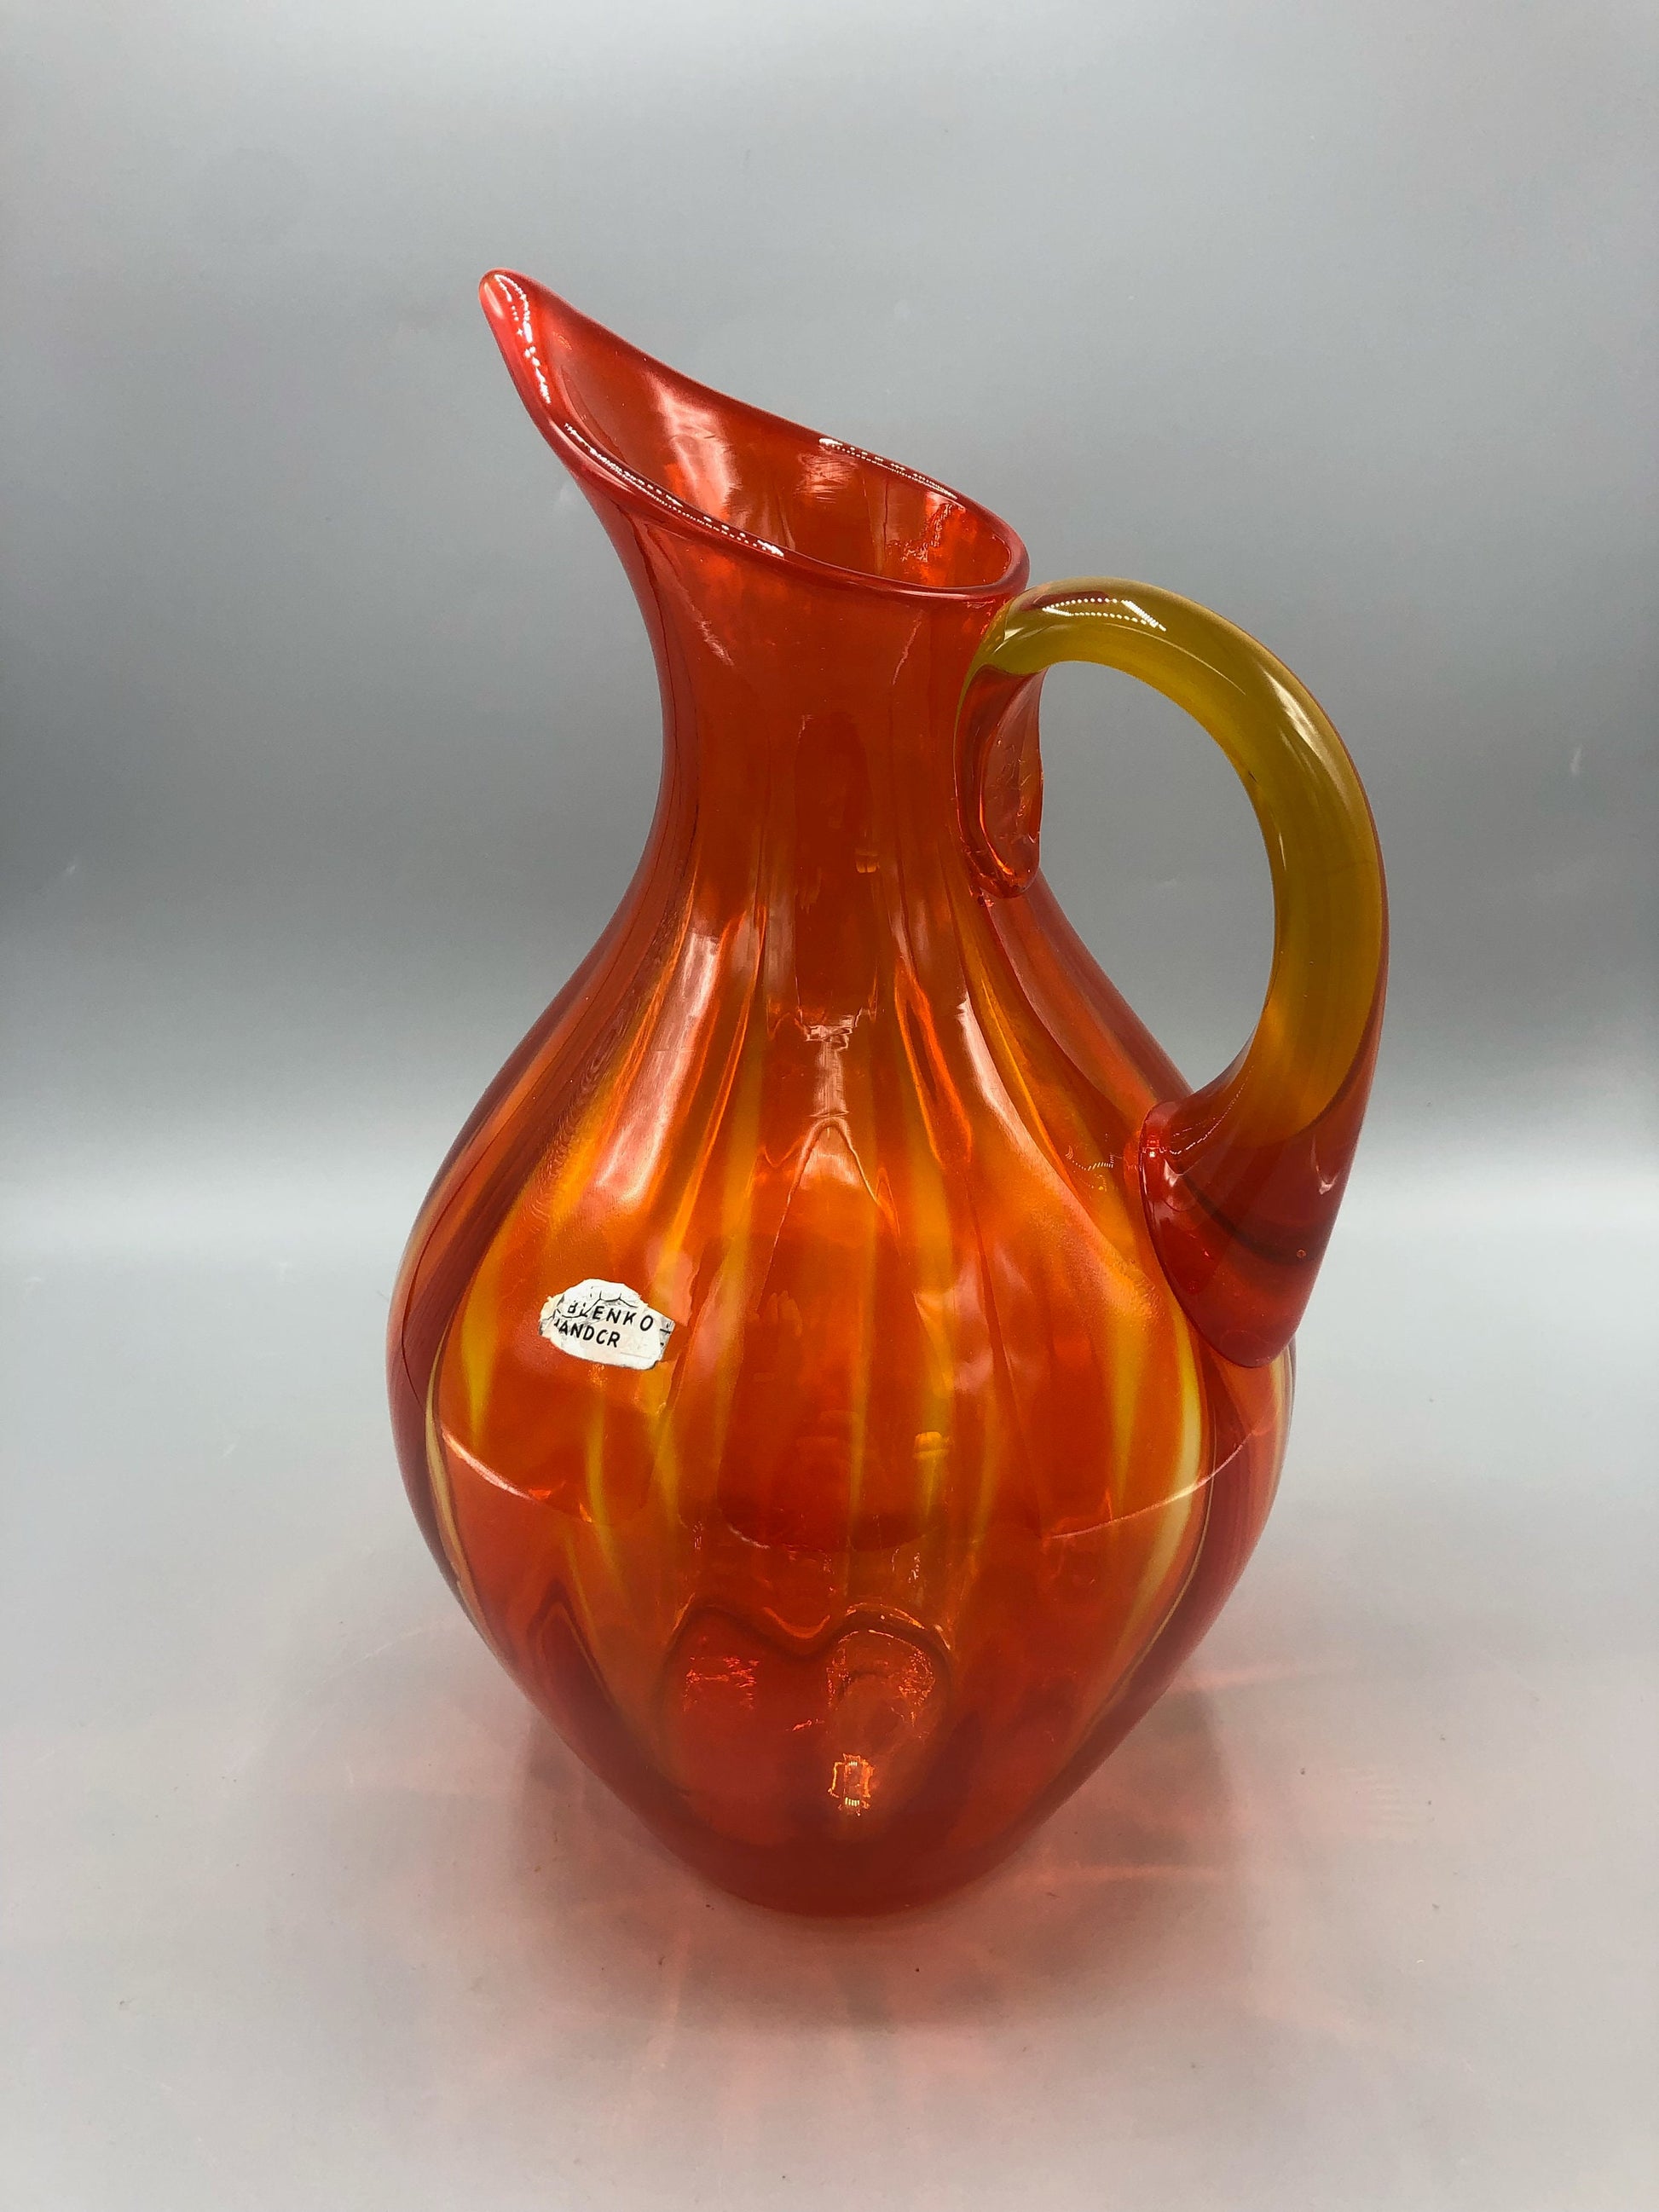 Blenko Orange and Yellow Amberina Glass Pitcher